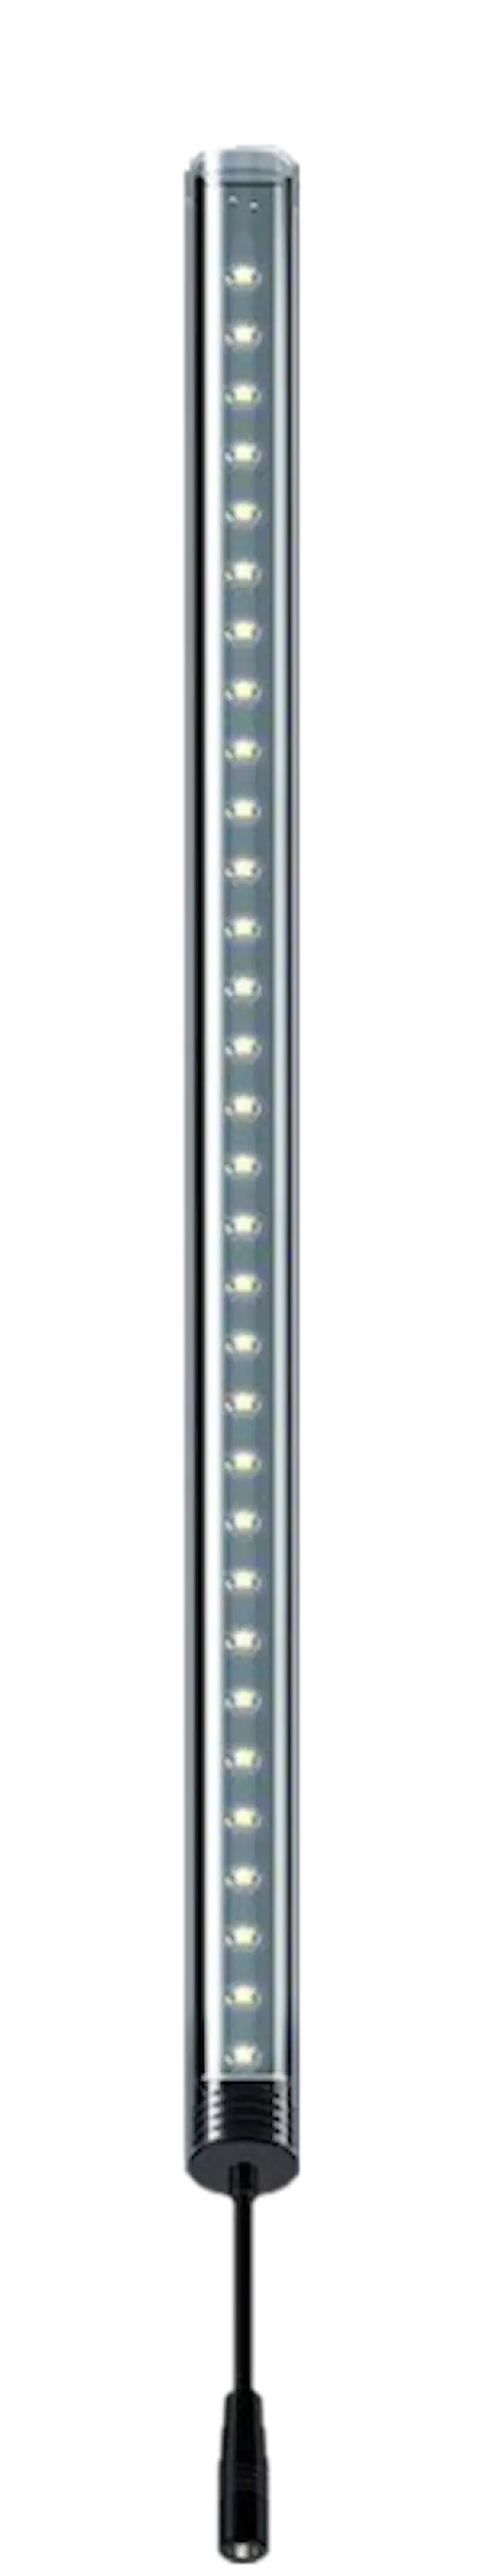 LightWave LED komplett sett, 270 - 350 mm